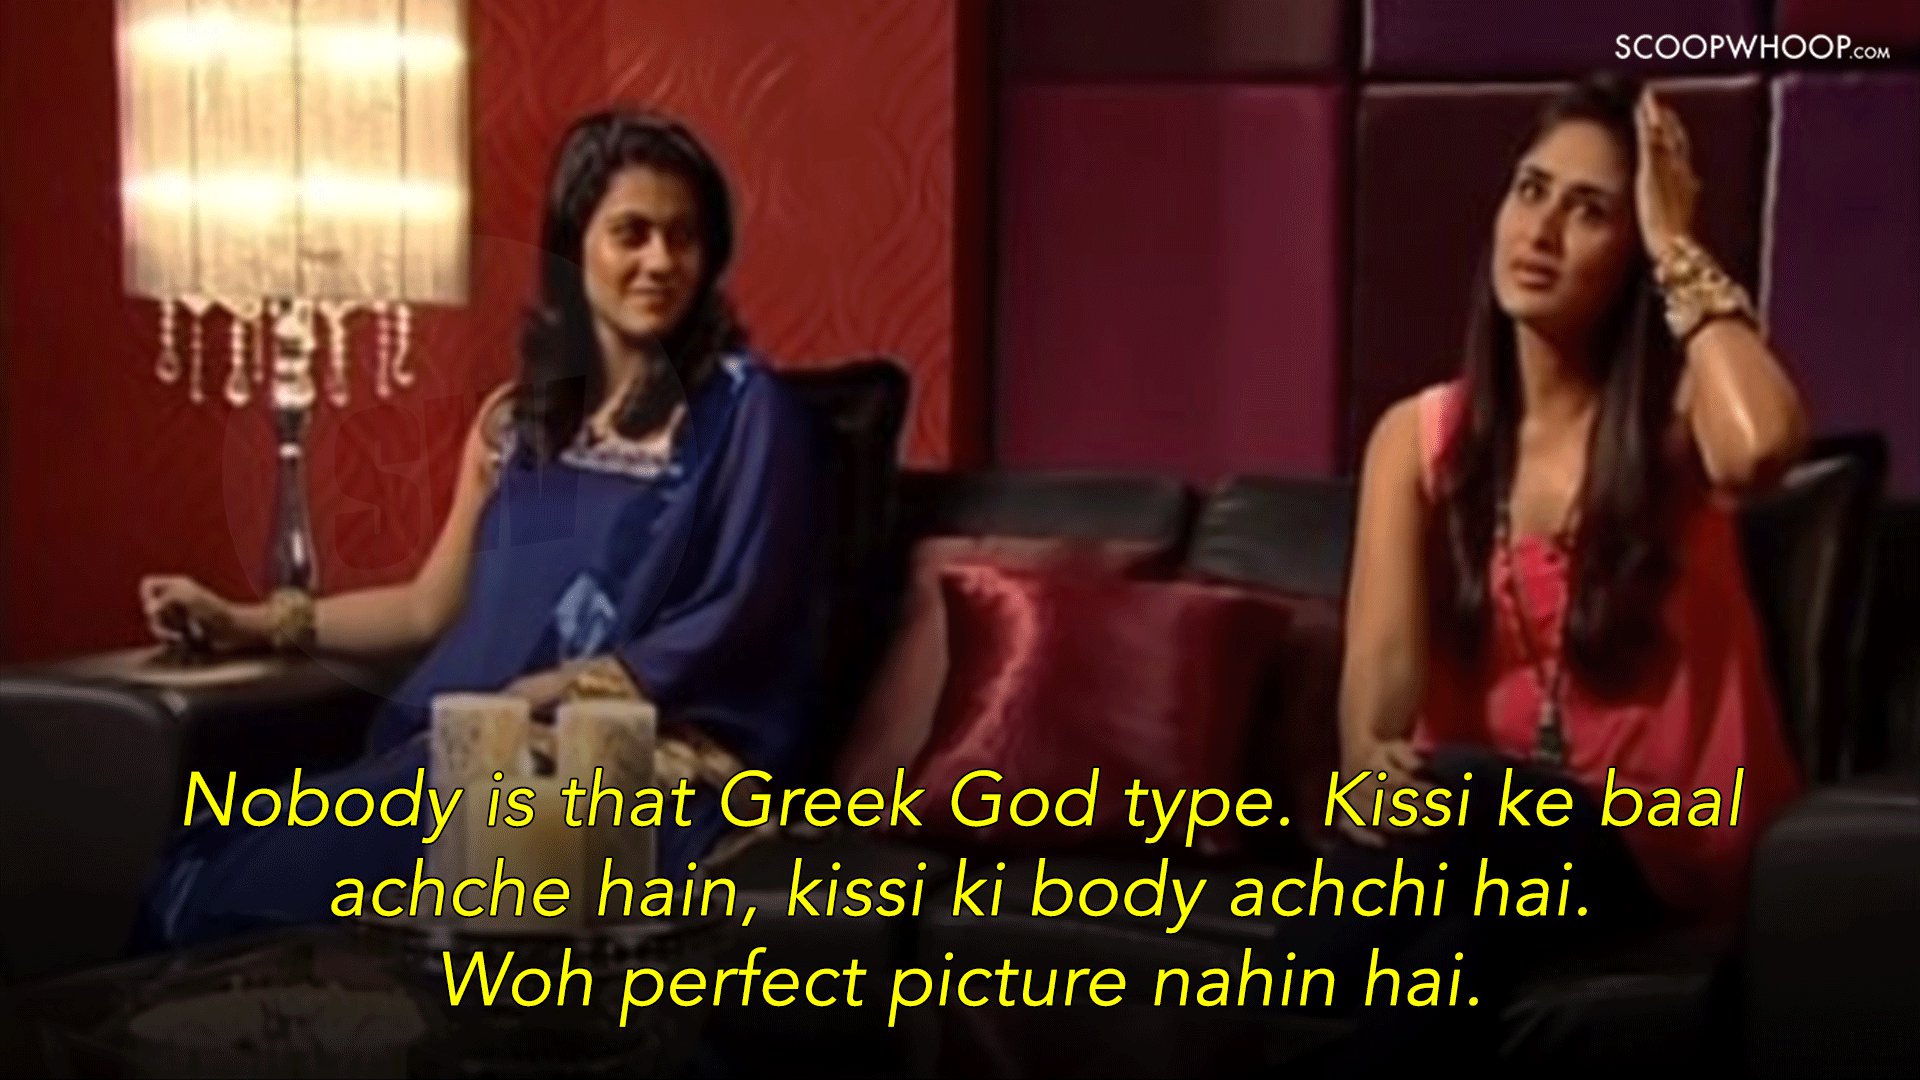 Η Kareena Kapoor ως Geet